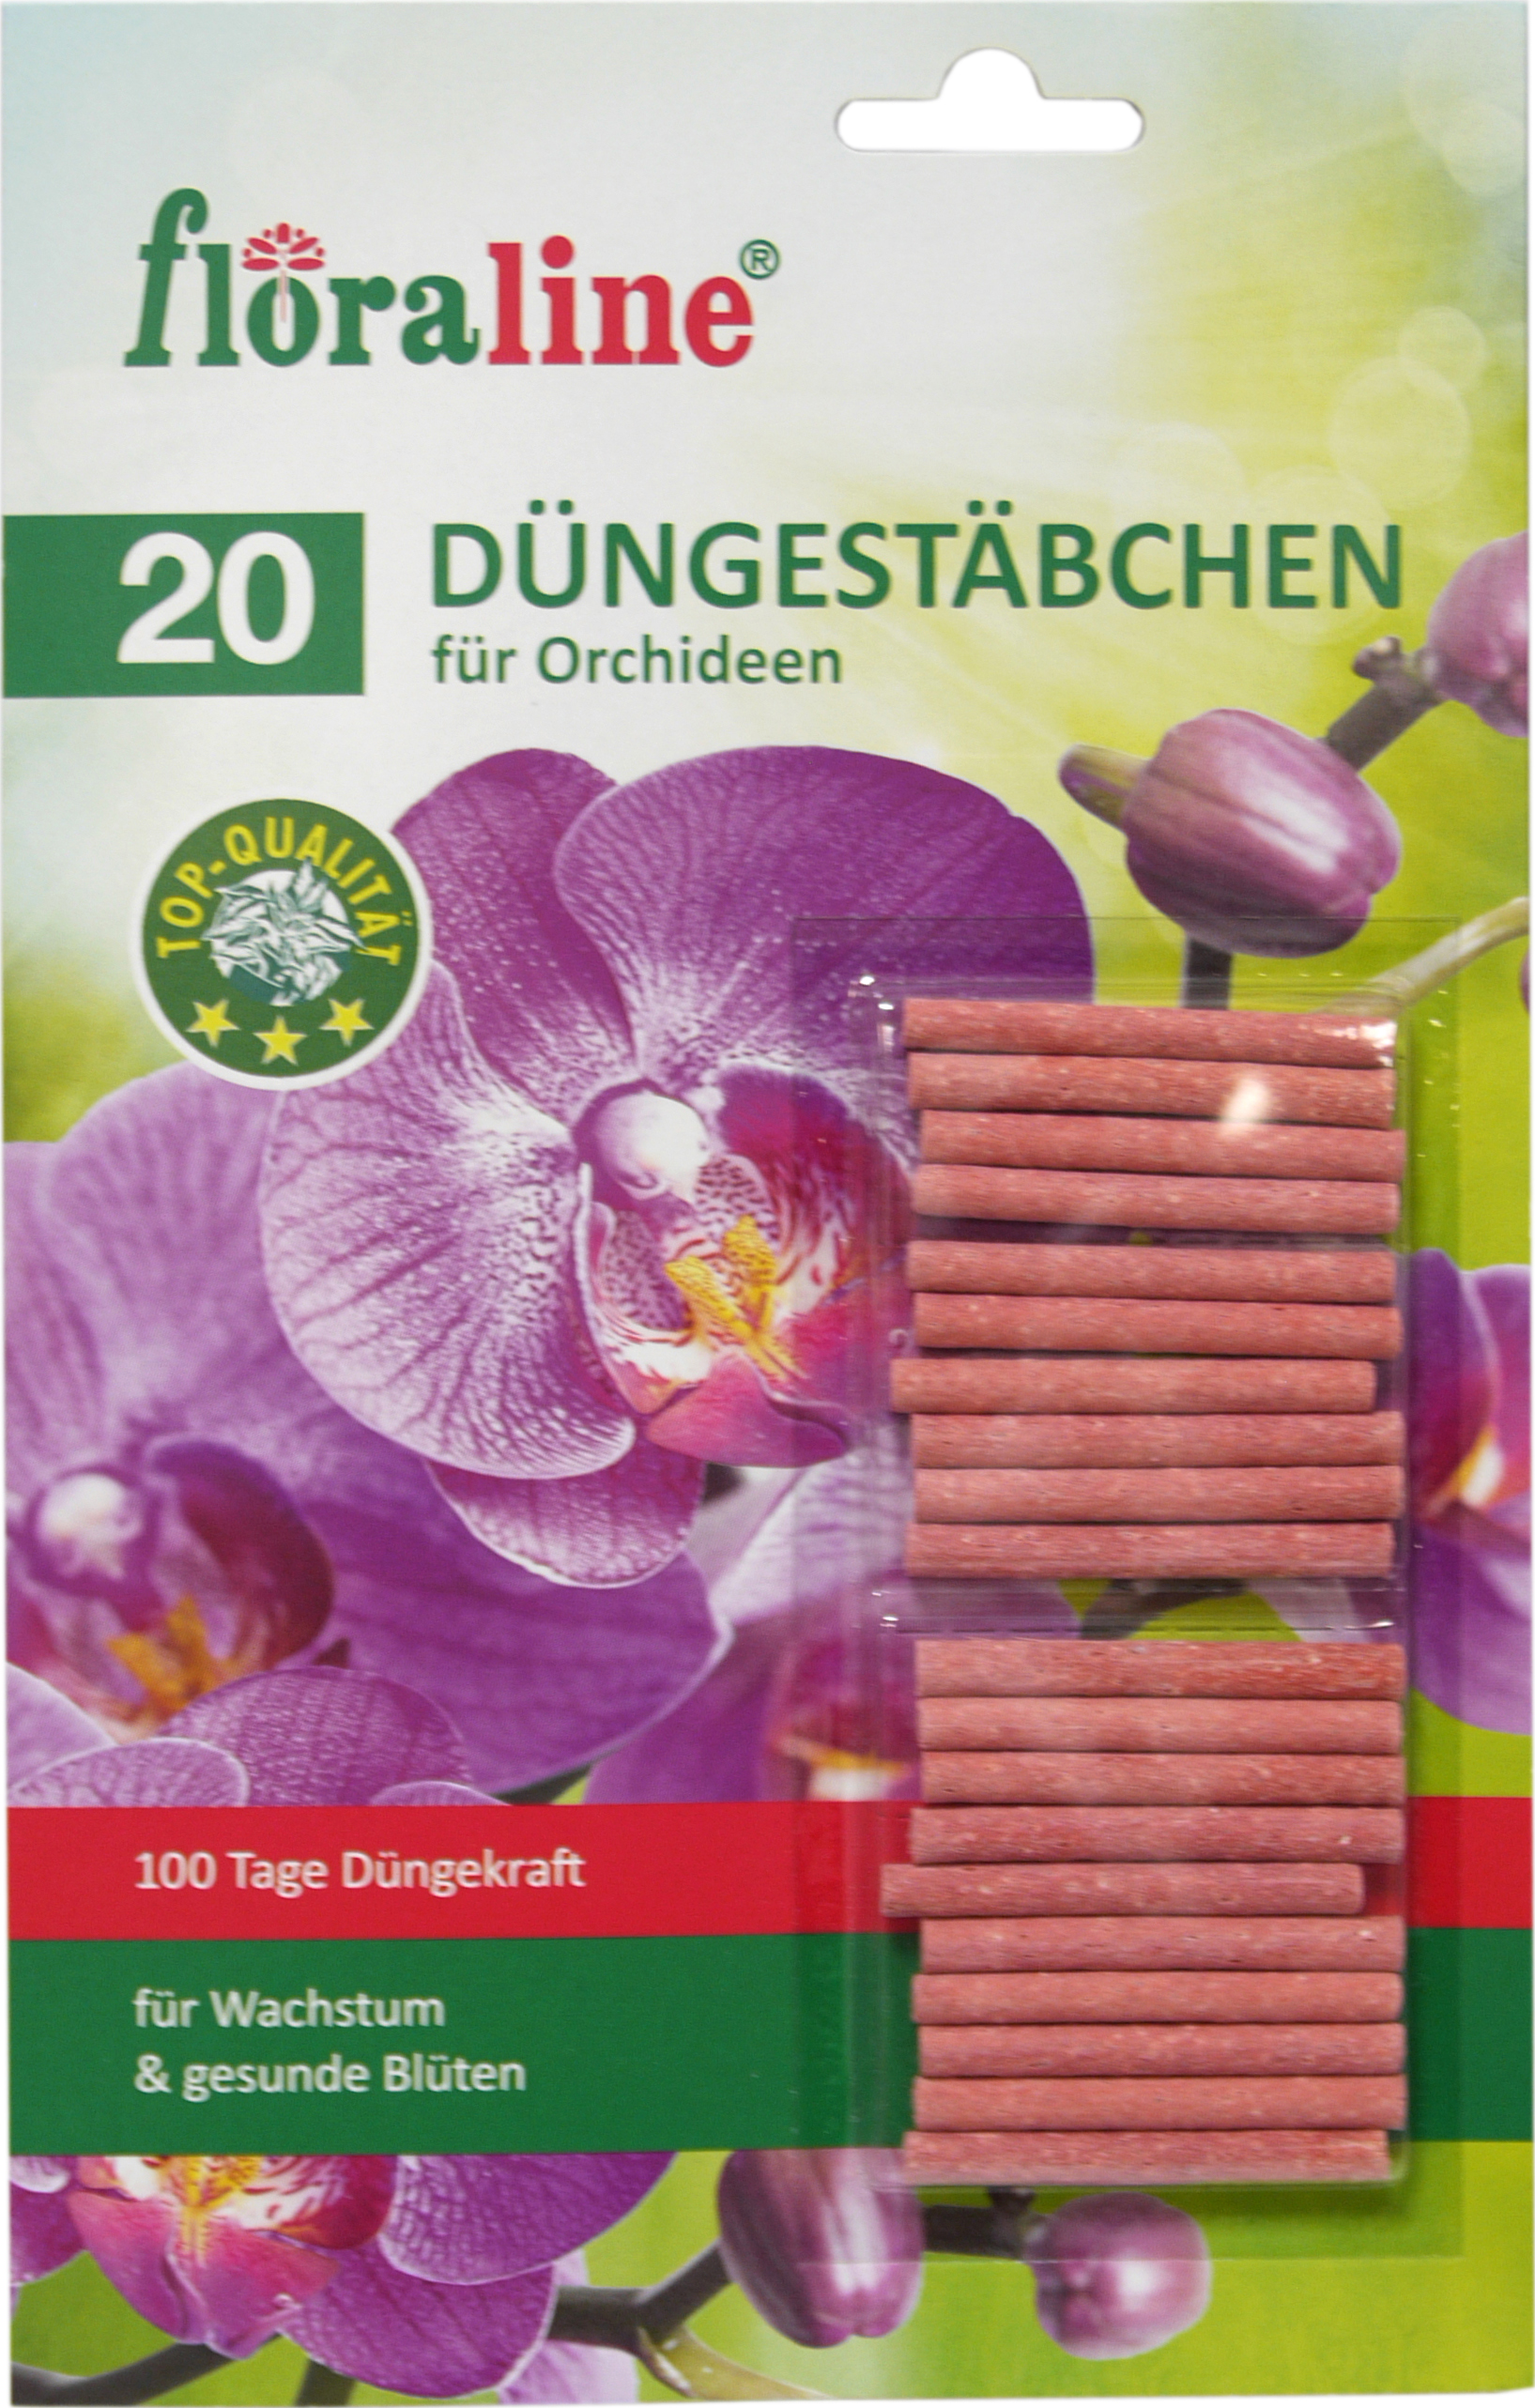 02206 - fertilizer sticks for orchids 20 pcs